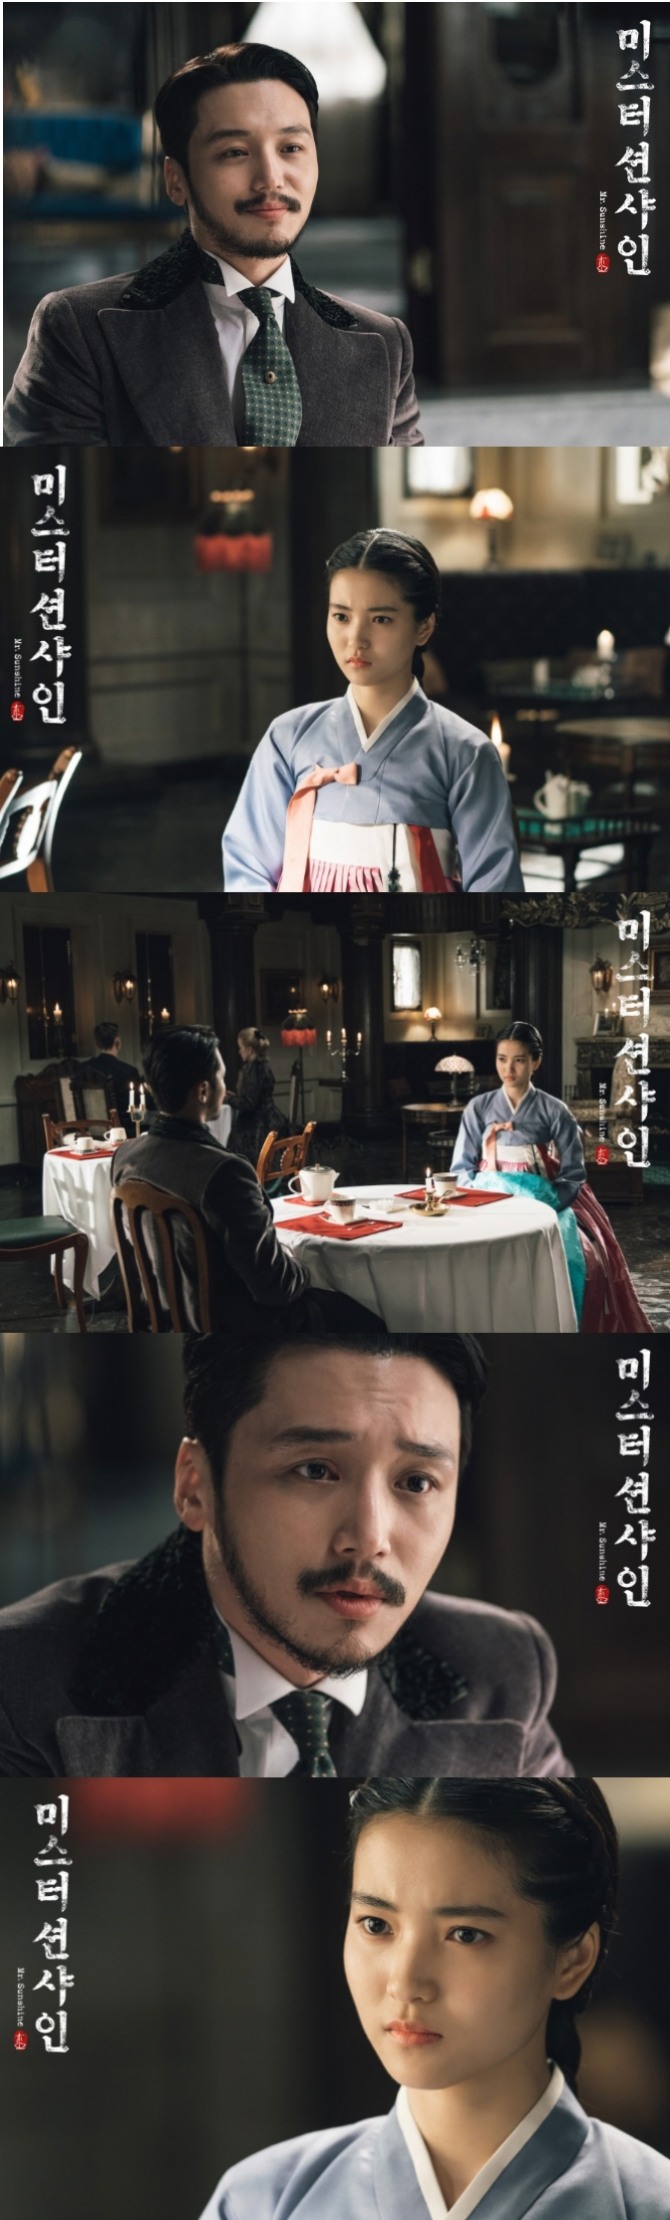 tvN 토일드라마 '미스터 션샤인'측은 19일 공식 홈페이지를 통해 극중 정혼관계인 김희성 역의 변요한과 고애신 역의 김태리 중식당 데이트 현장 스틸 컷을 공개해 기대감을 높였다.사진=tvN 제공